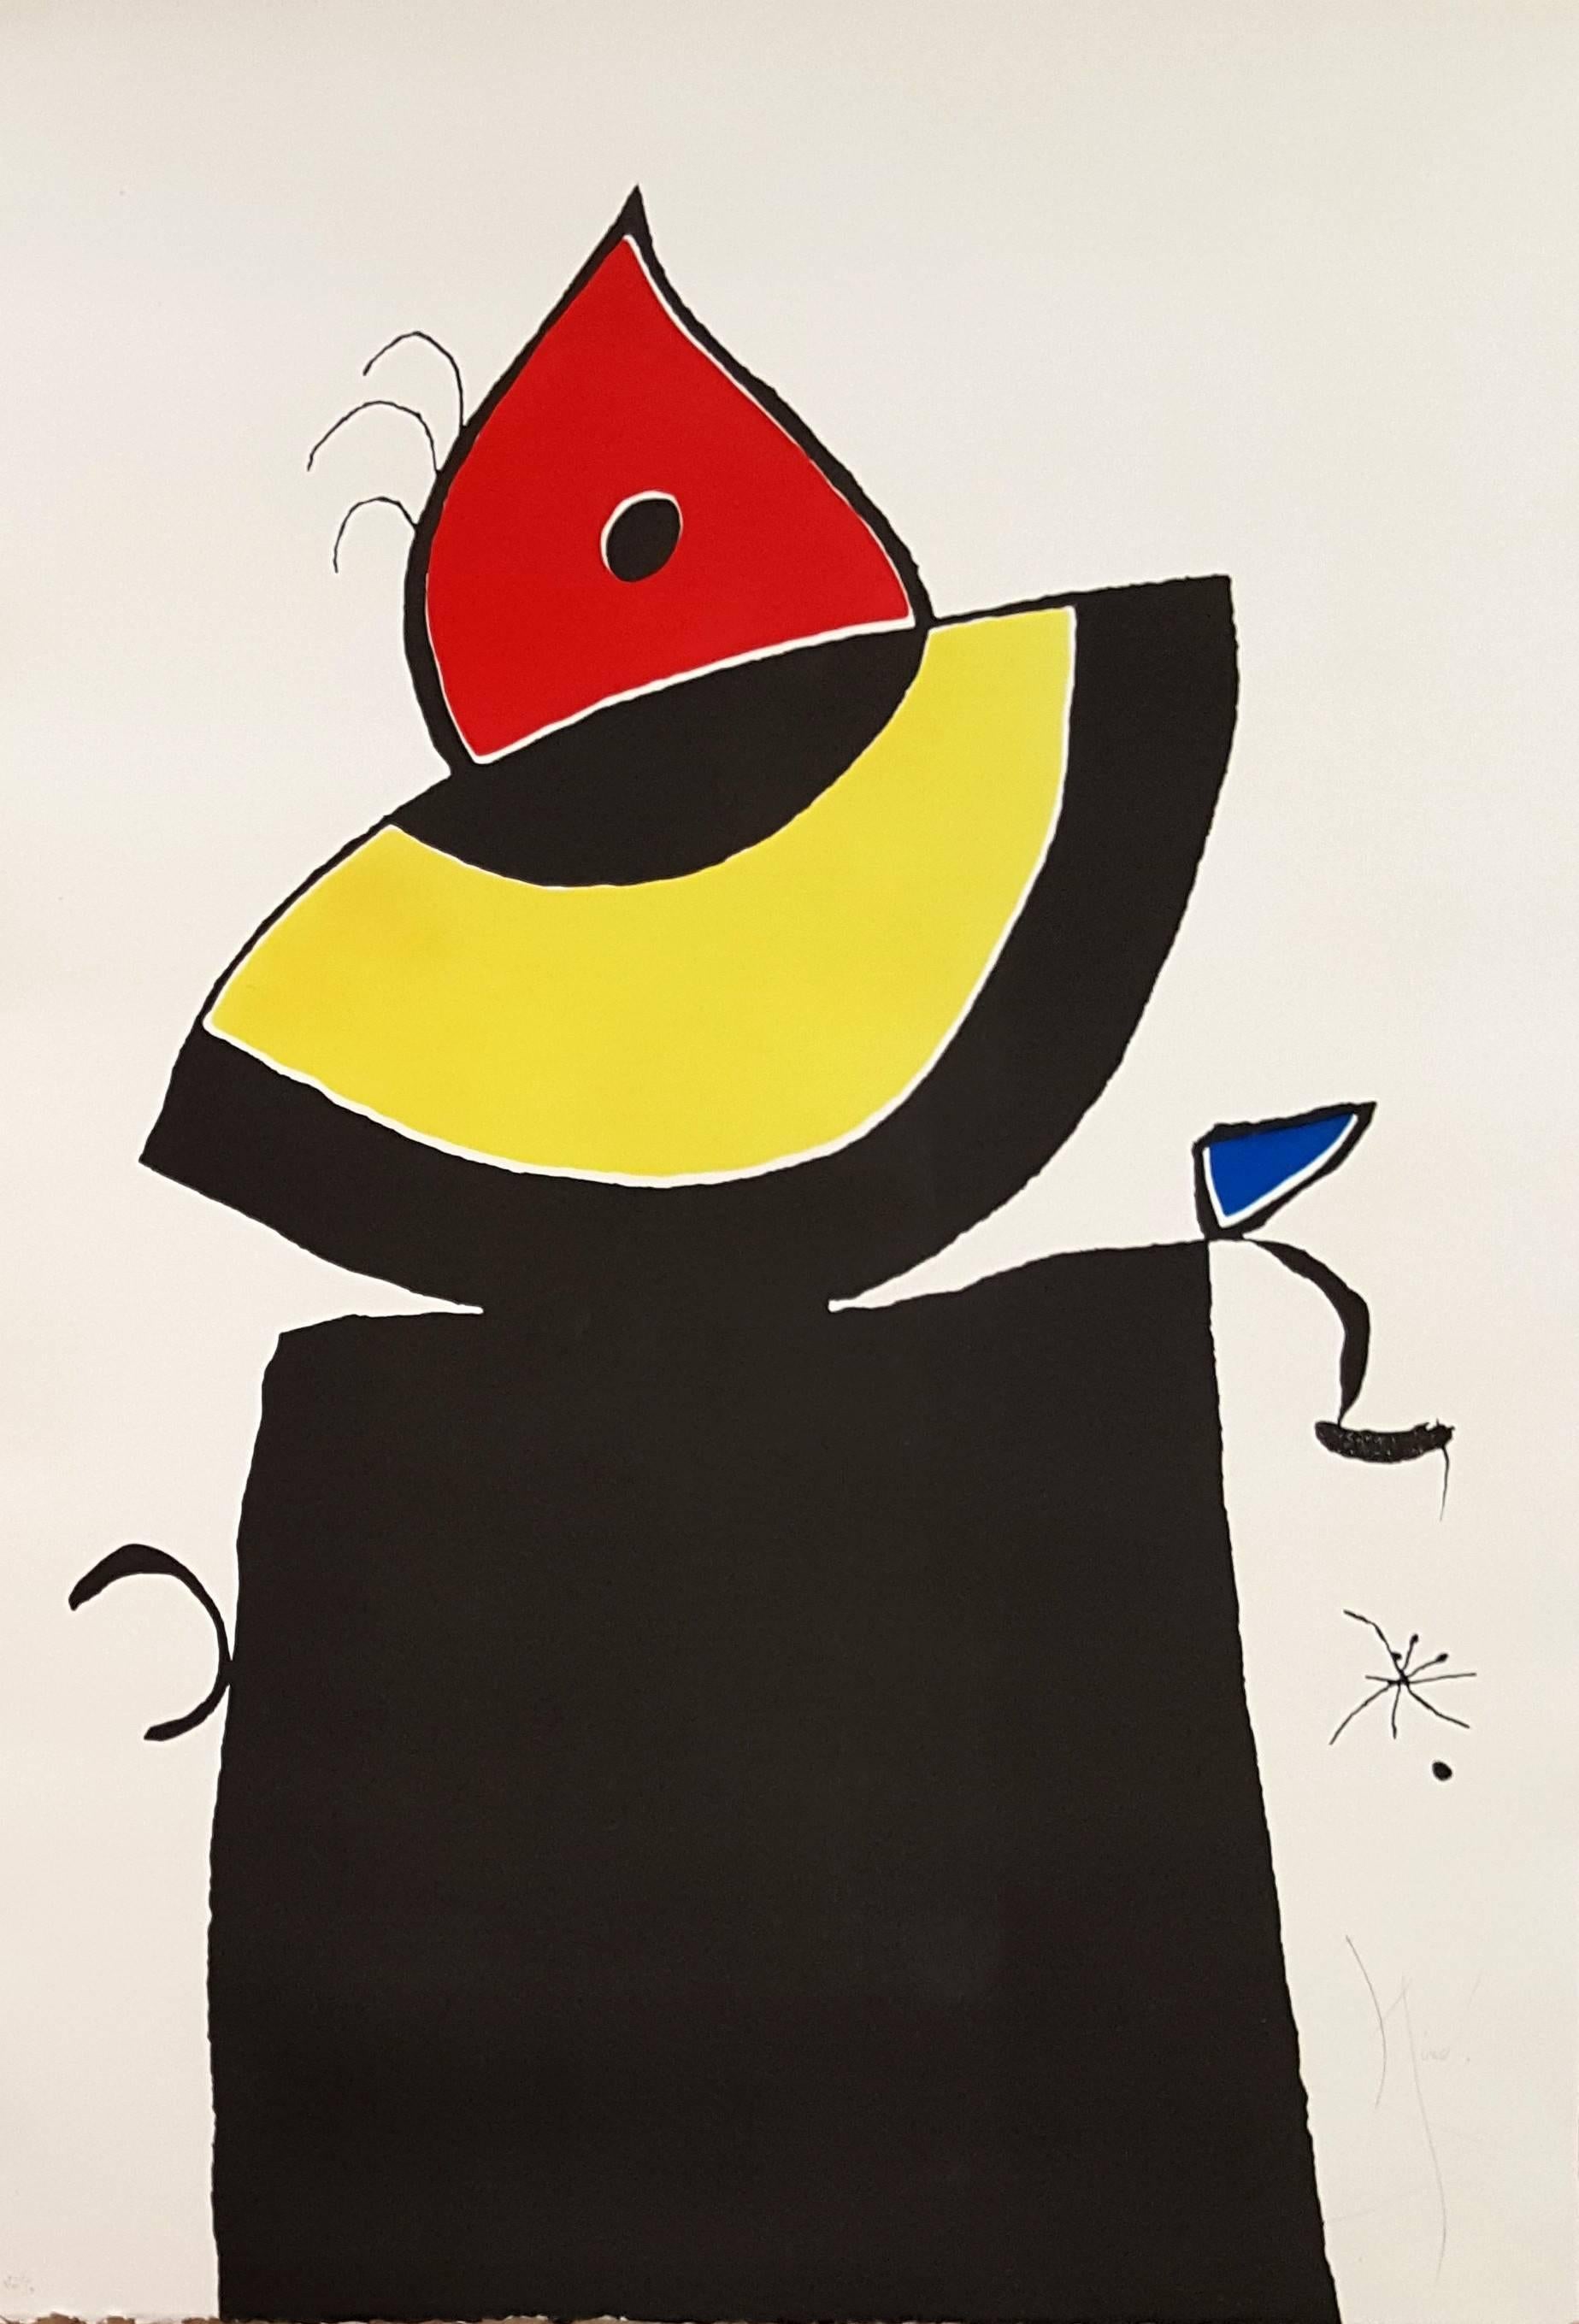 Joan Miró Abstract Print - Quatre Colors - Original Etching Handsigned - 50 copies